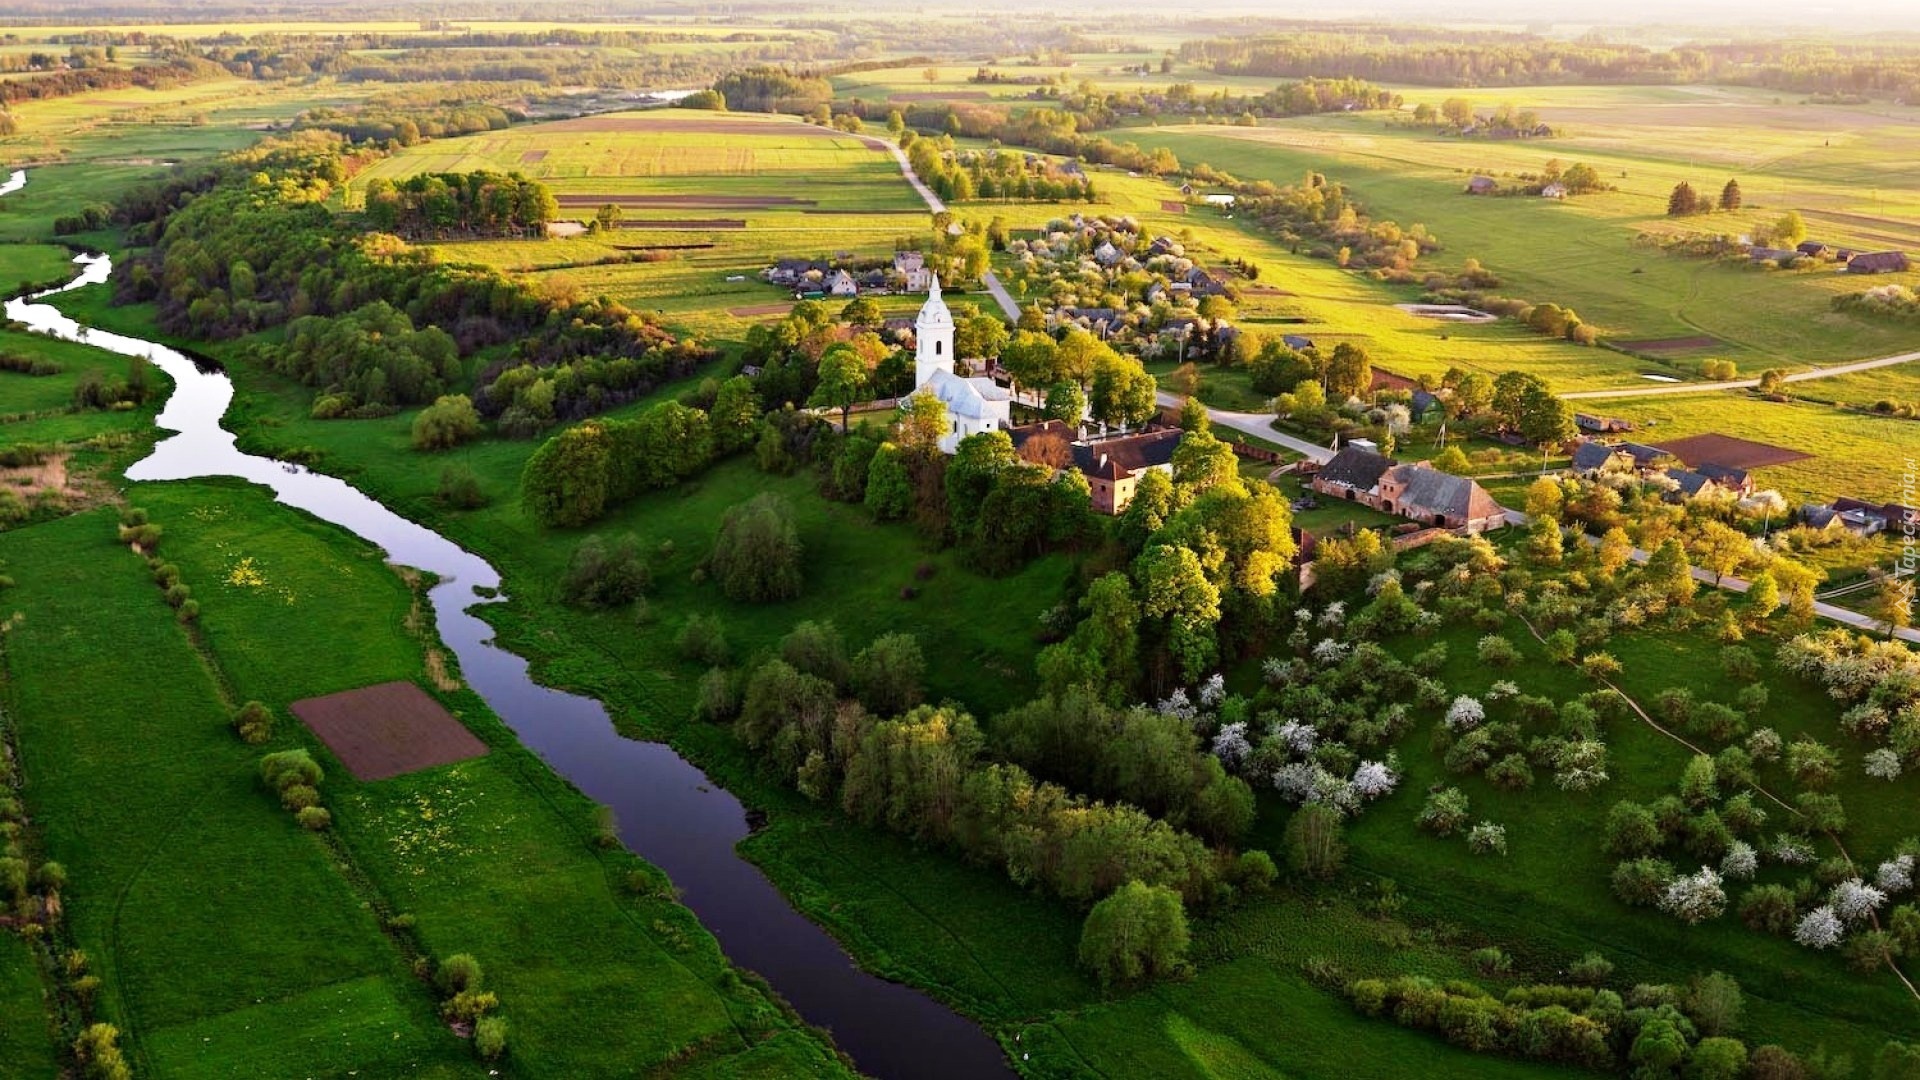 Litwa, Panorama